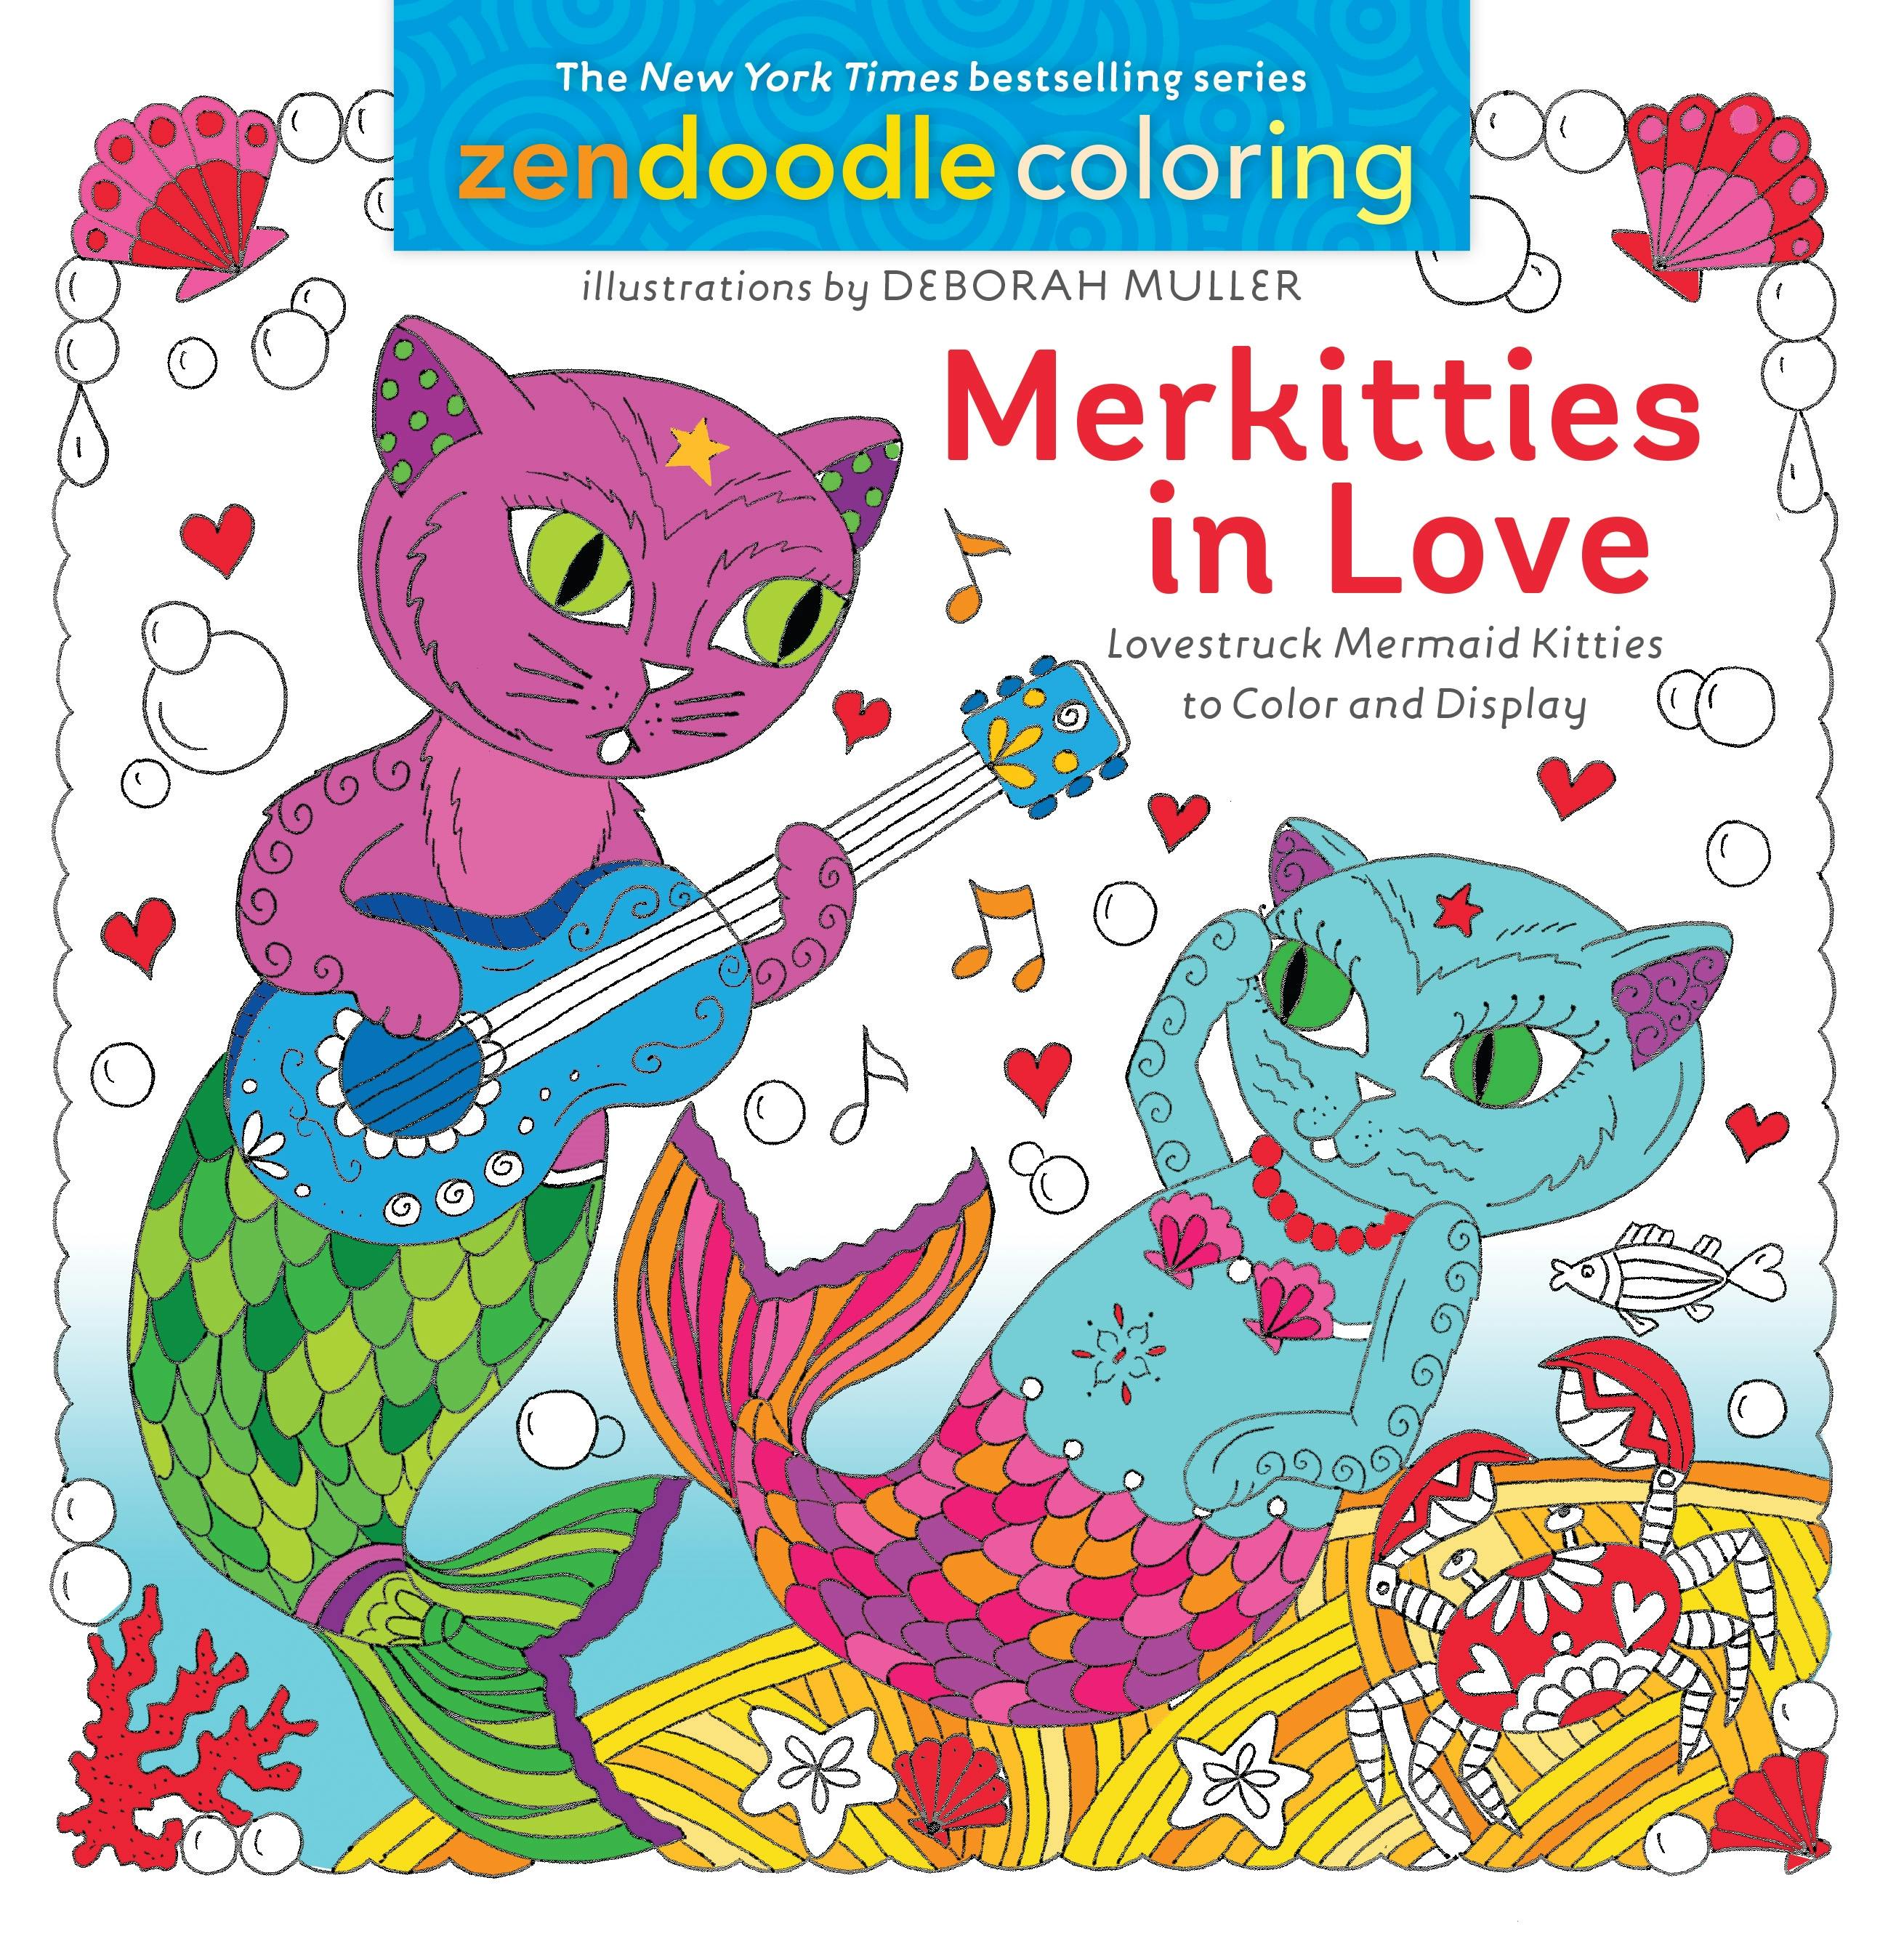 Zendoodle Coloring: Merkitties in Love